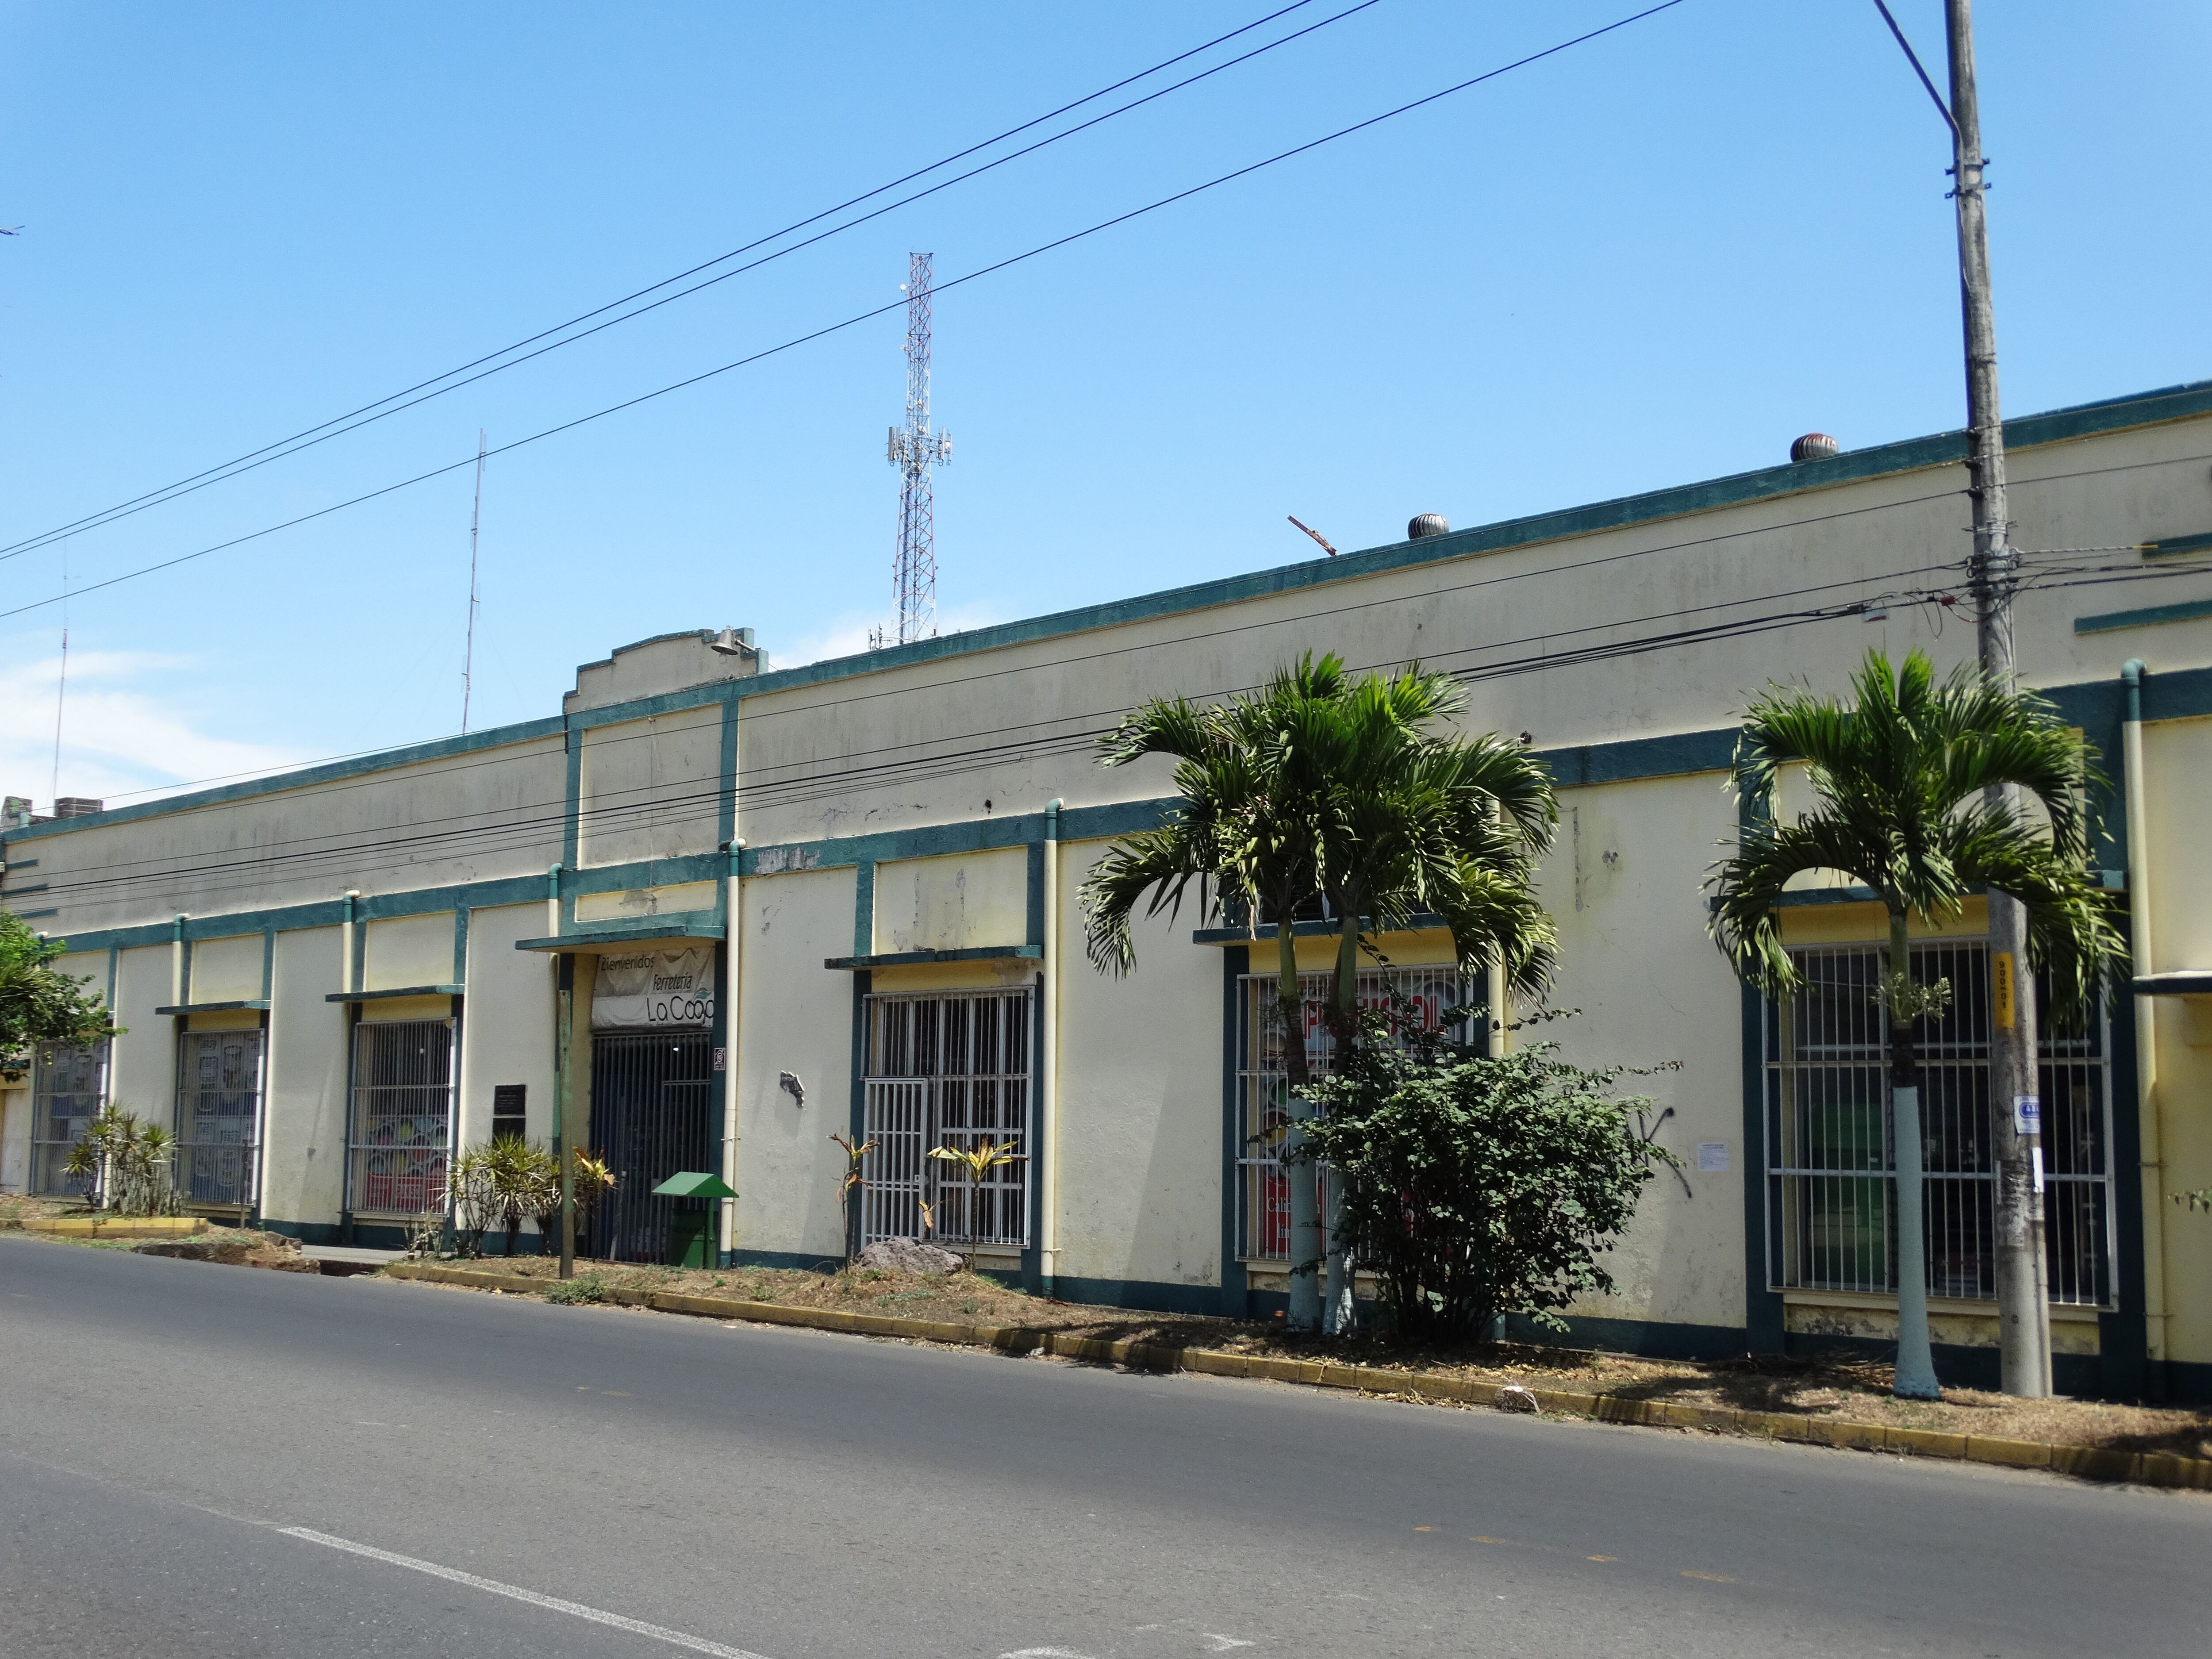 Así se ve el edificio de la antigua Cooperativa Tabacalera de Palmares.

Fotografía: Centro de Patrimonio